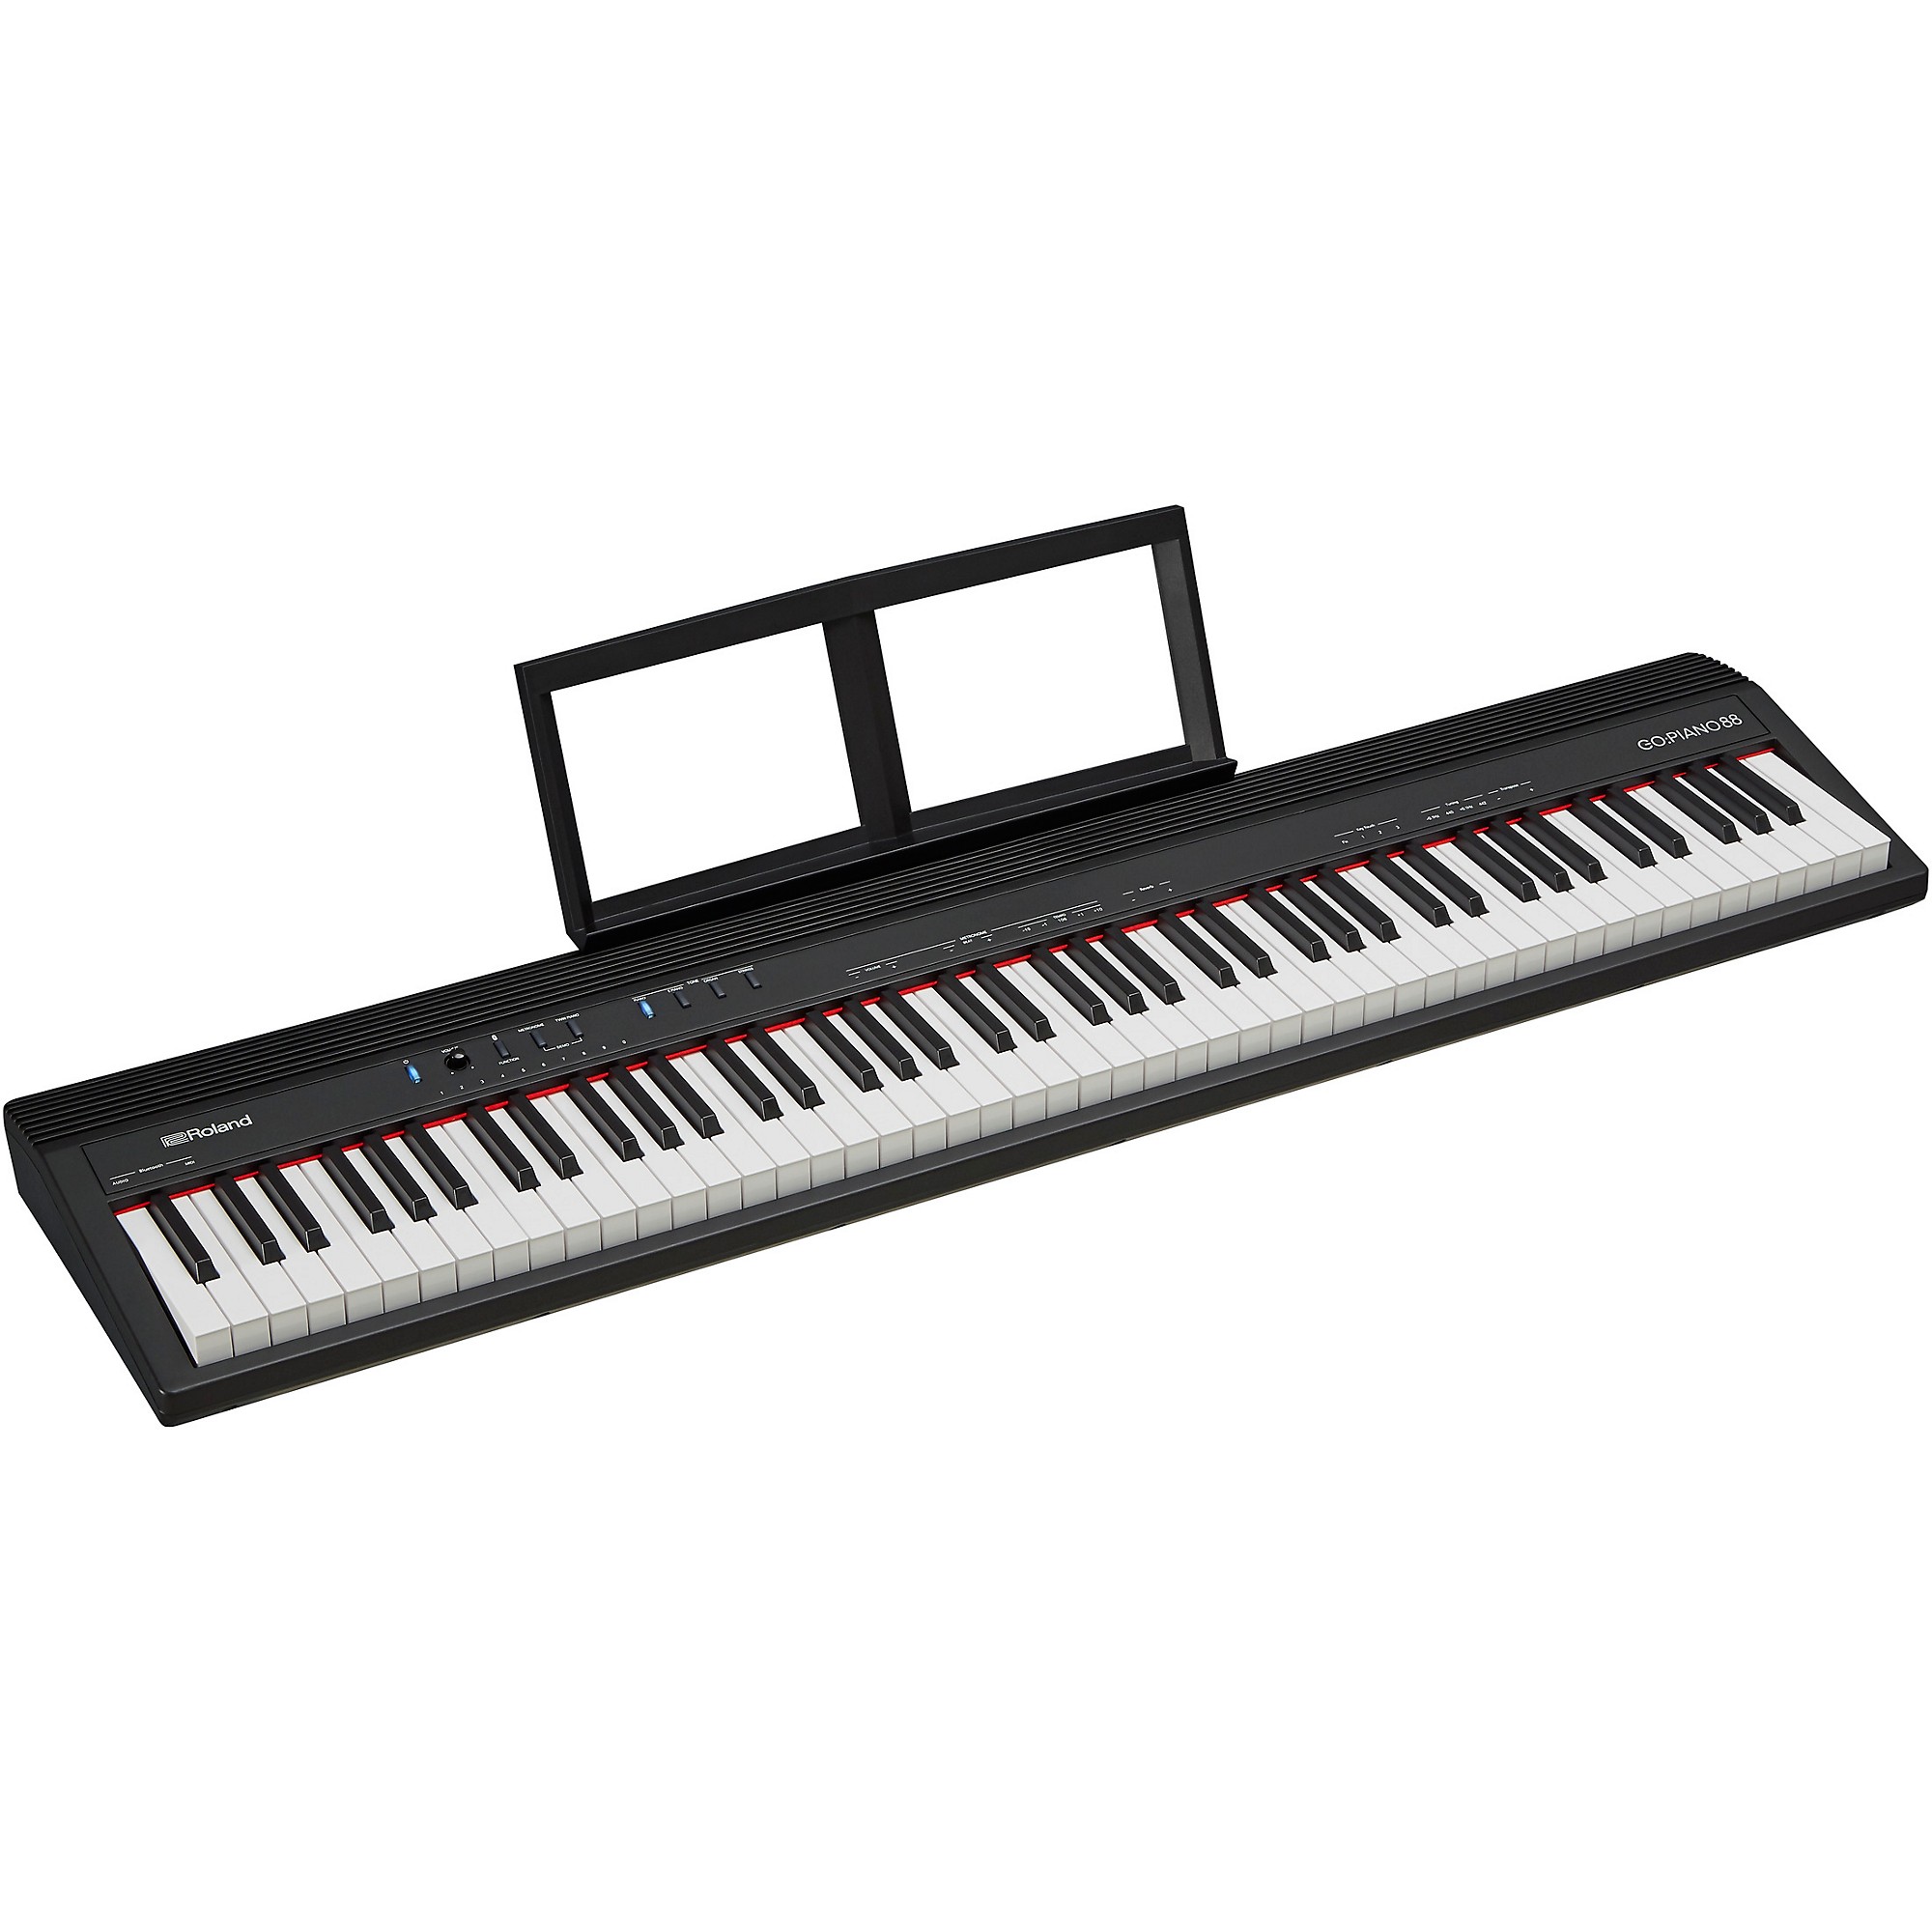 Roland GO:PIANO88 88-Key Digital Piano | Guitar Center